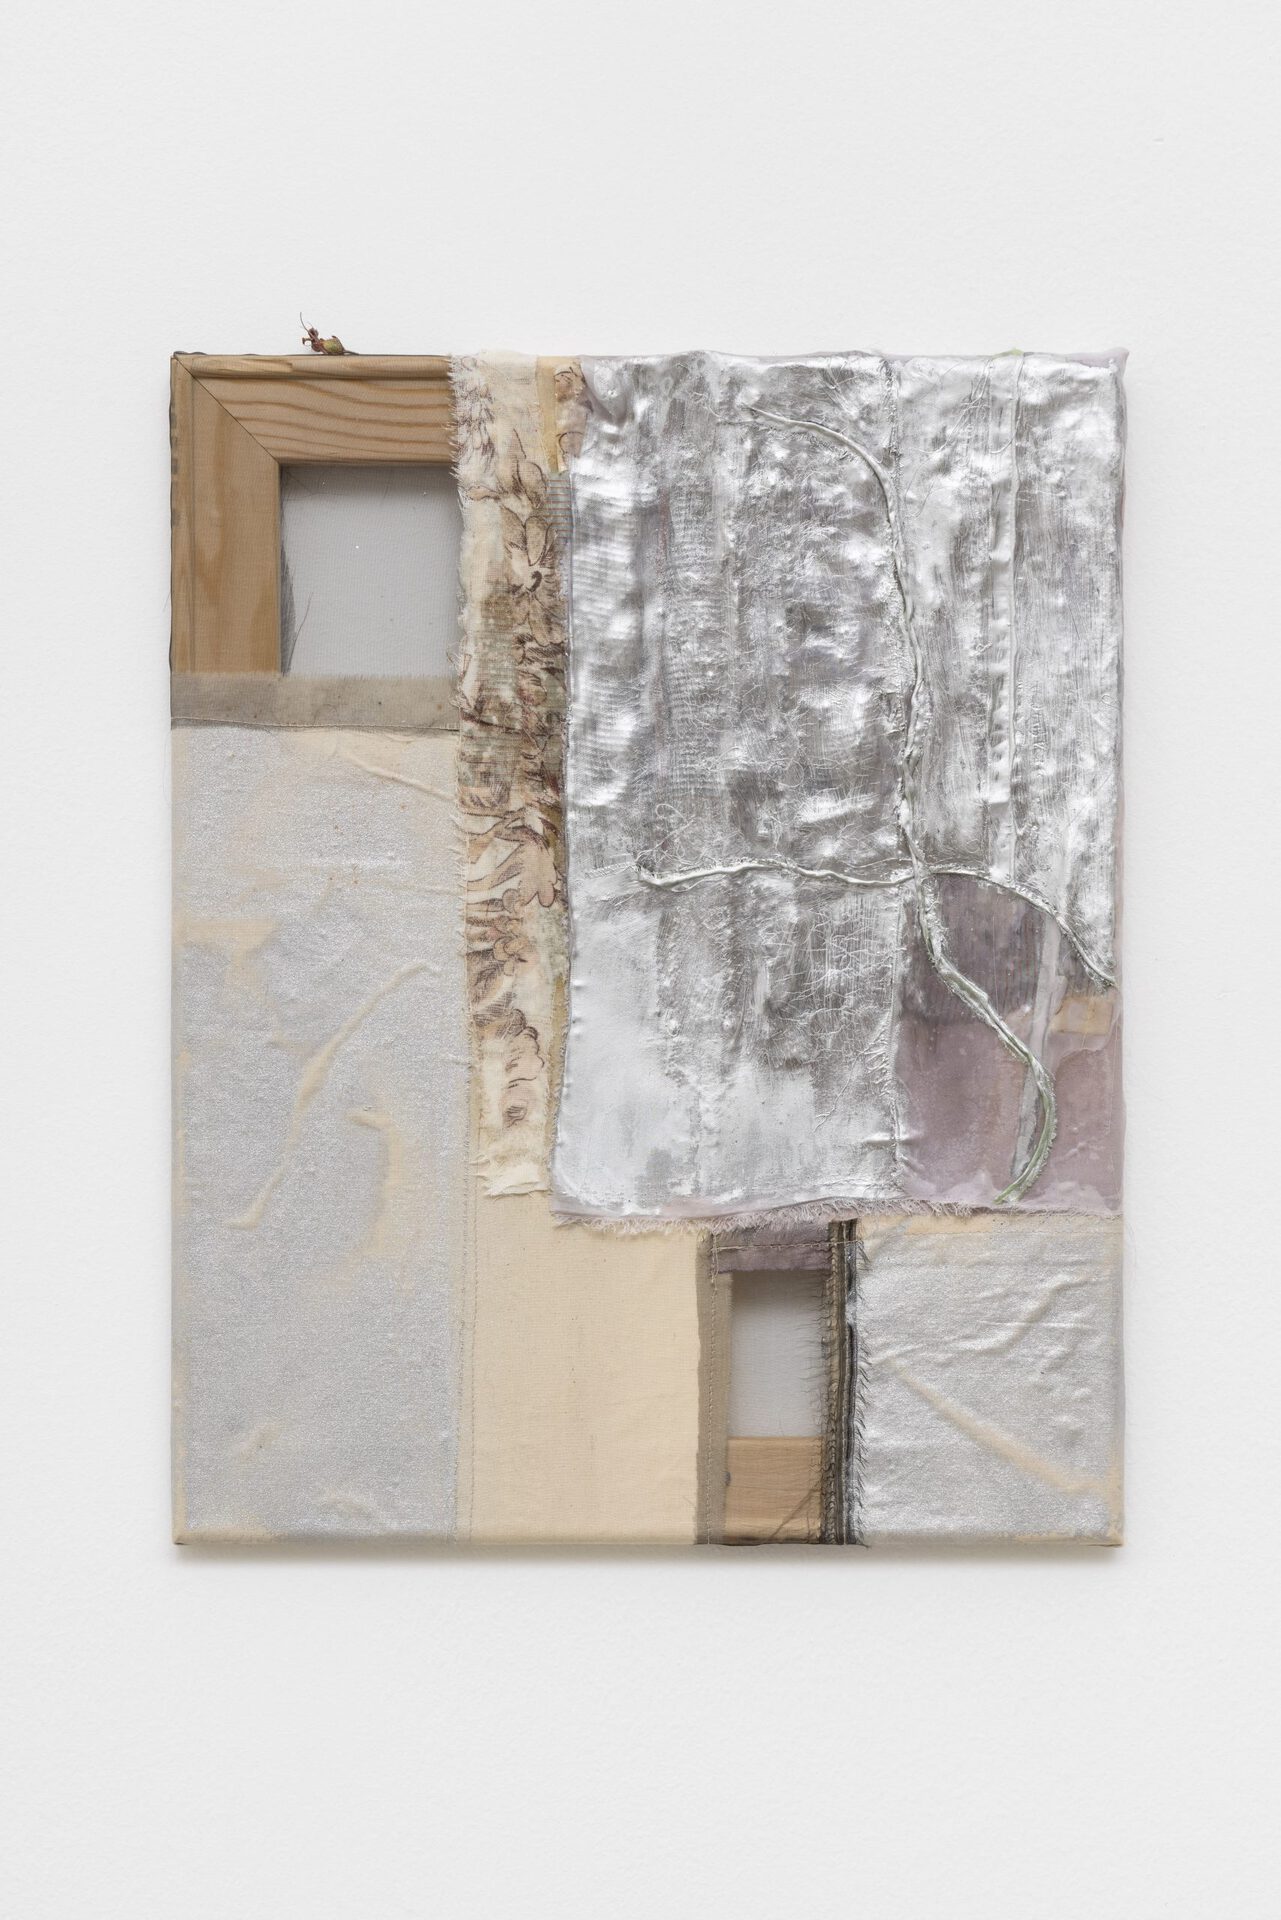 Ania Bąk, Blind violet, 2022 acrylic paint, oil paint, glue, textiles, 50 x 40 cm